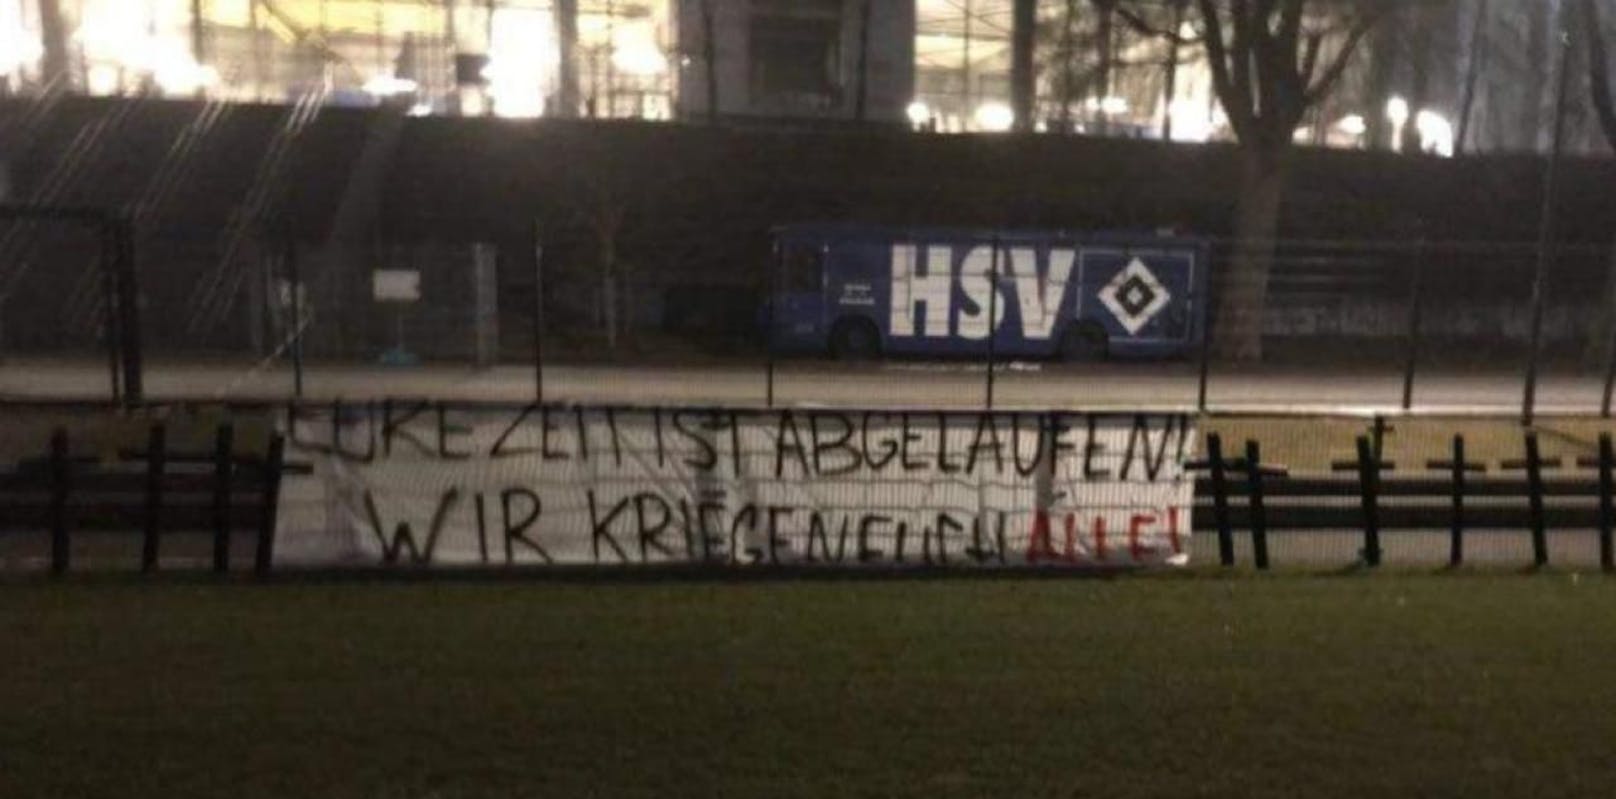 Elf Kreuze, dazu der Spruch &quot;Eure Zeit ist abgelaufen&quot;. Die HSV-Fans sorgen für einen Eklat.